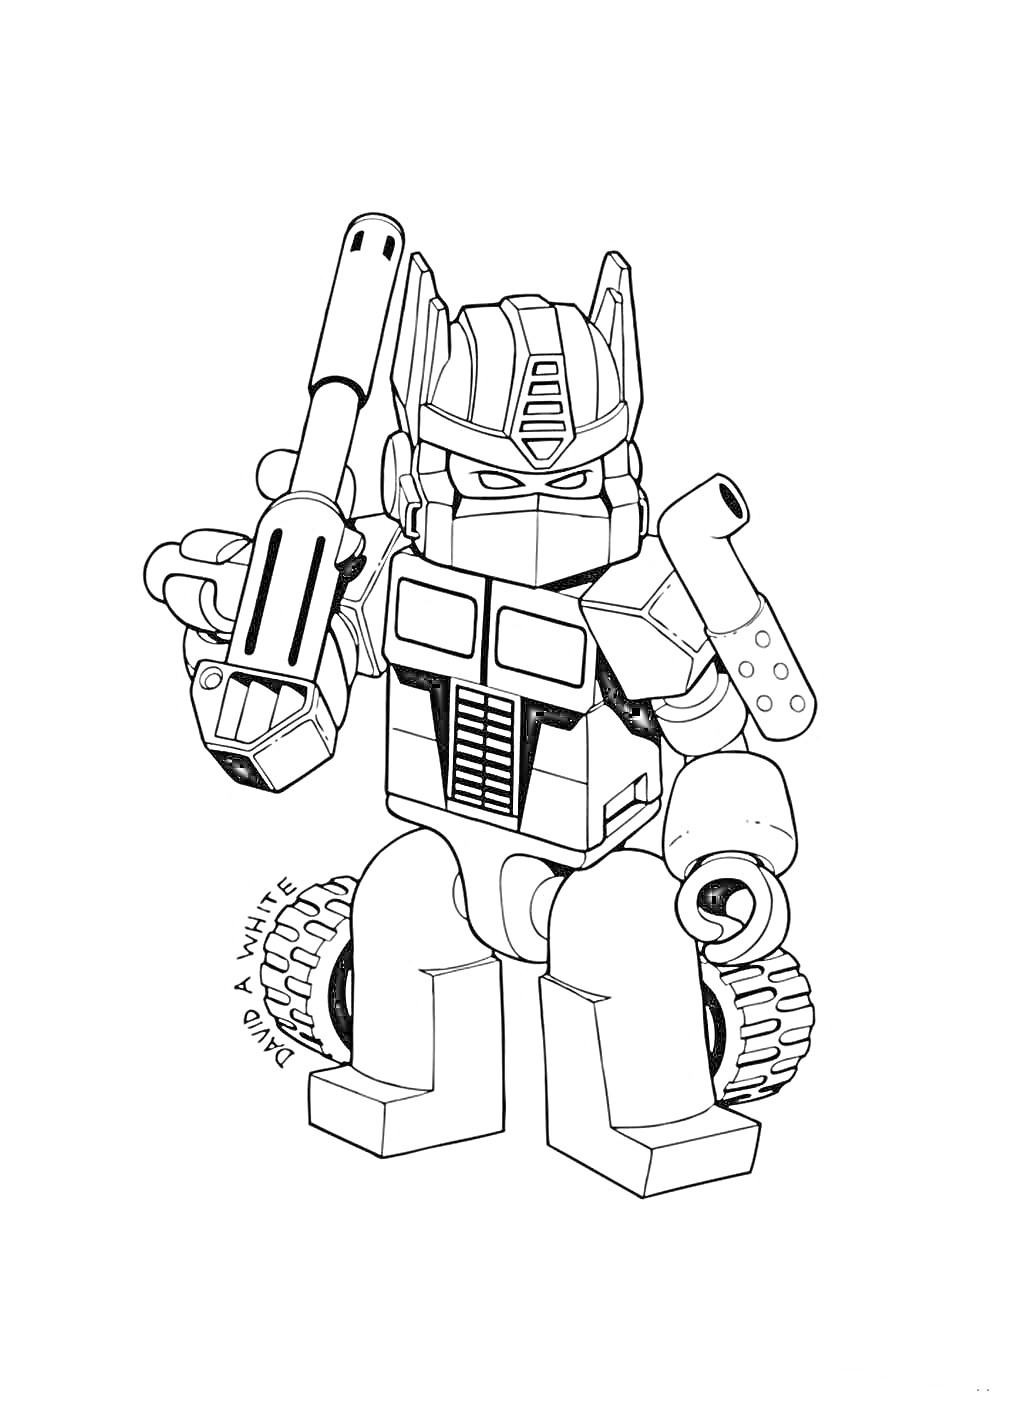 Раскраска Робот-игрушка с пушкой в руках и колесами на плечах